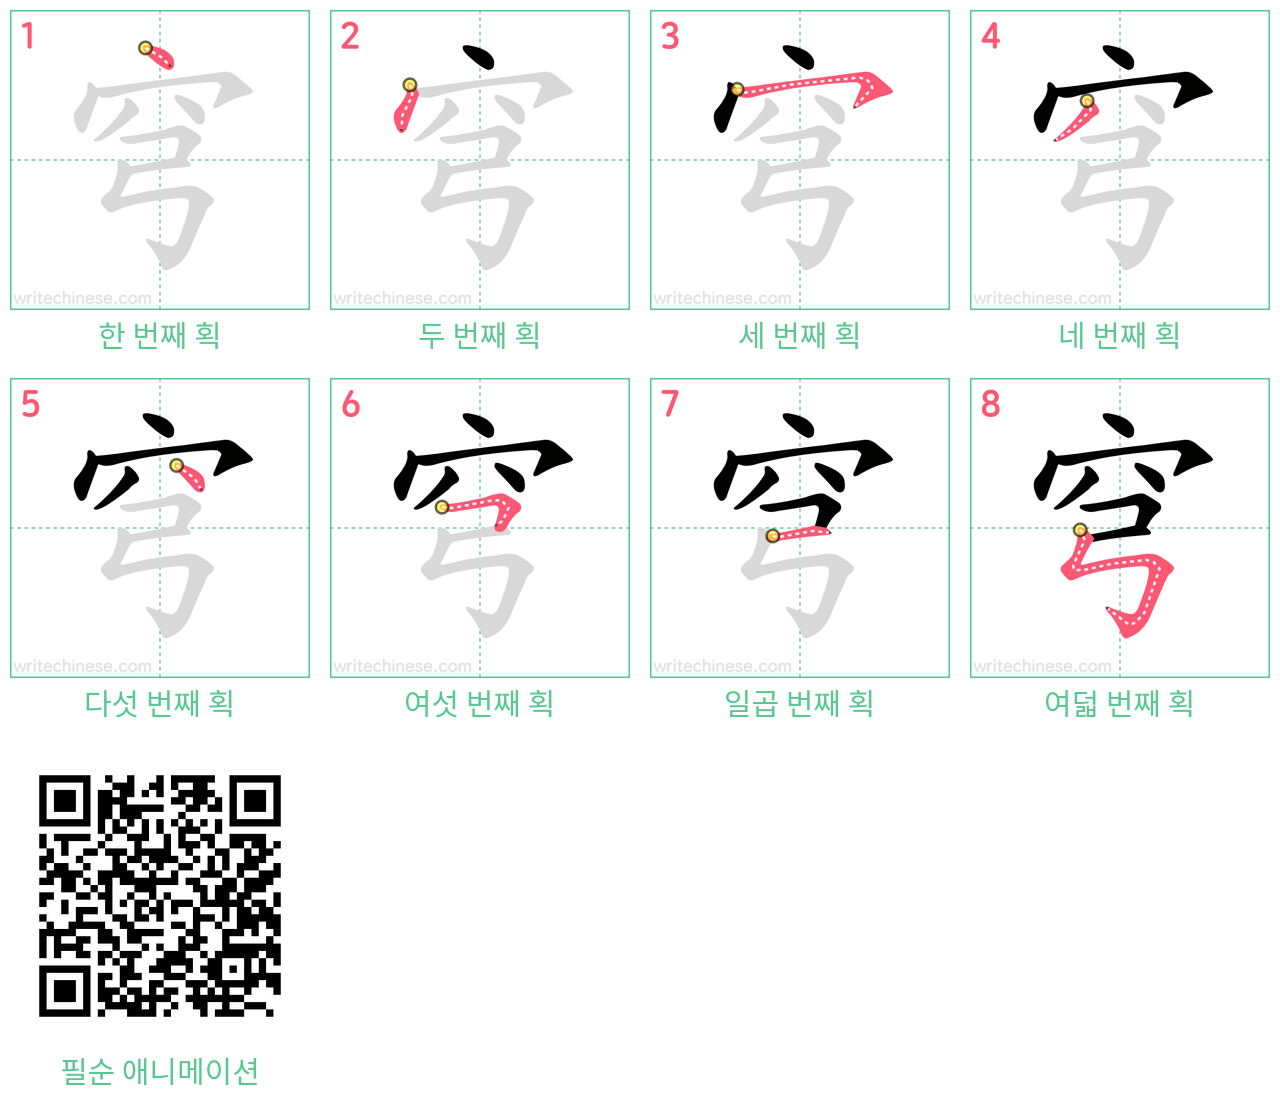 穹 step-by-step stroke order diagrams